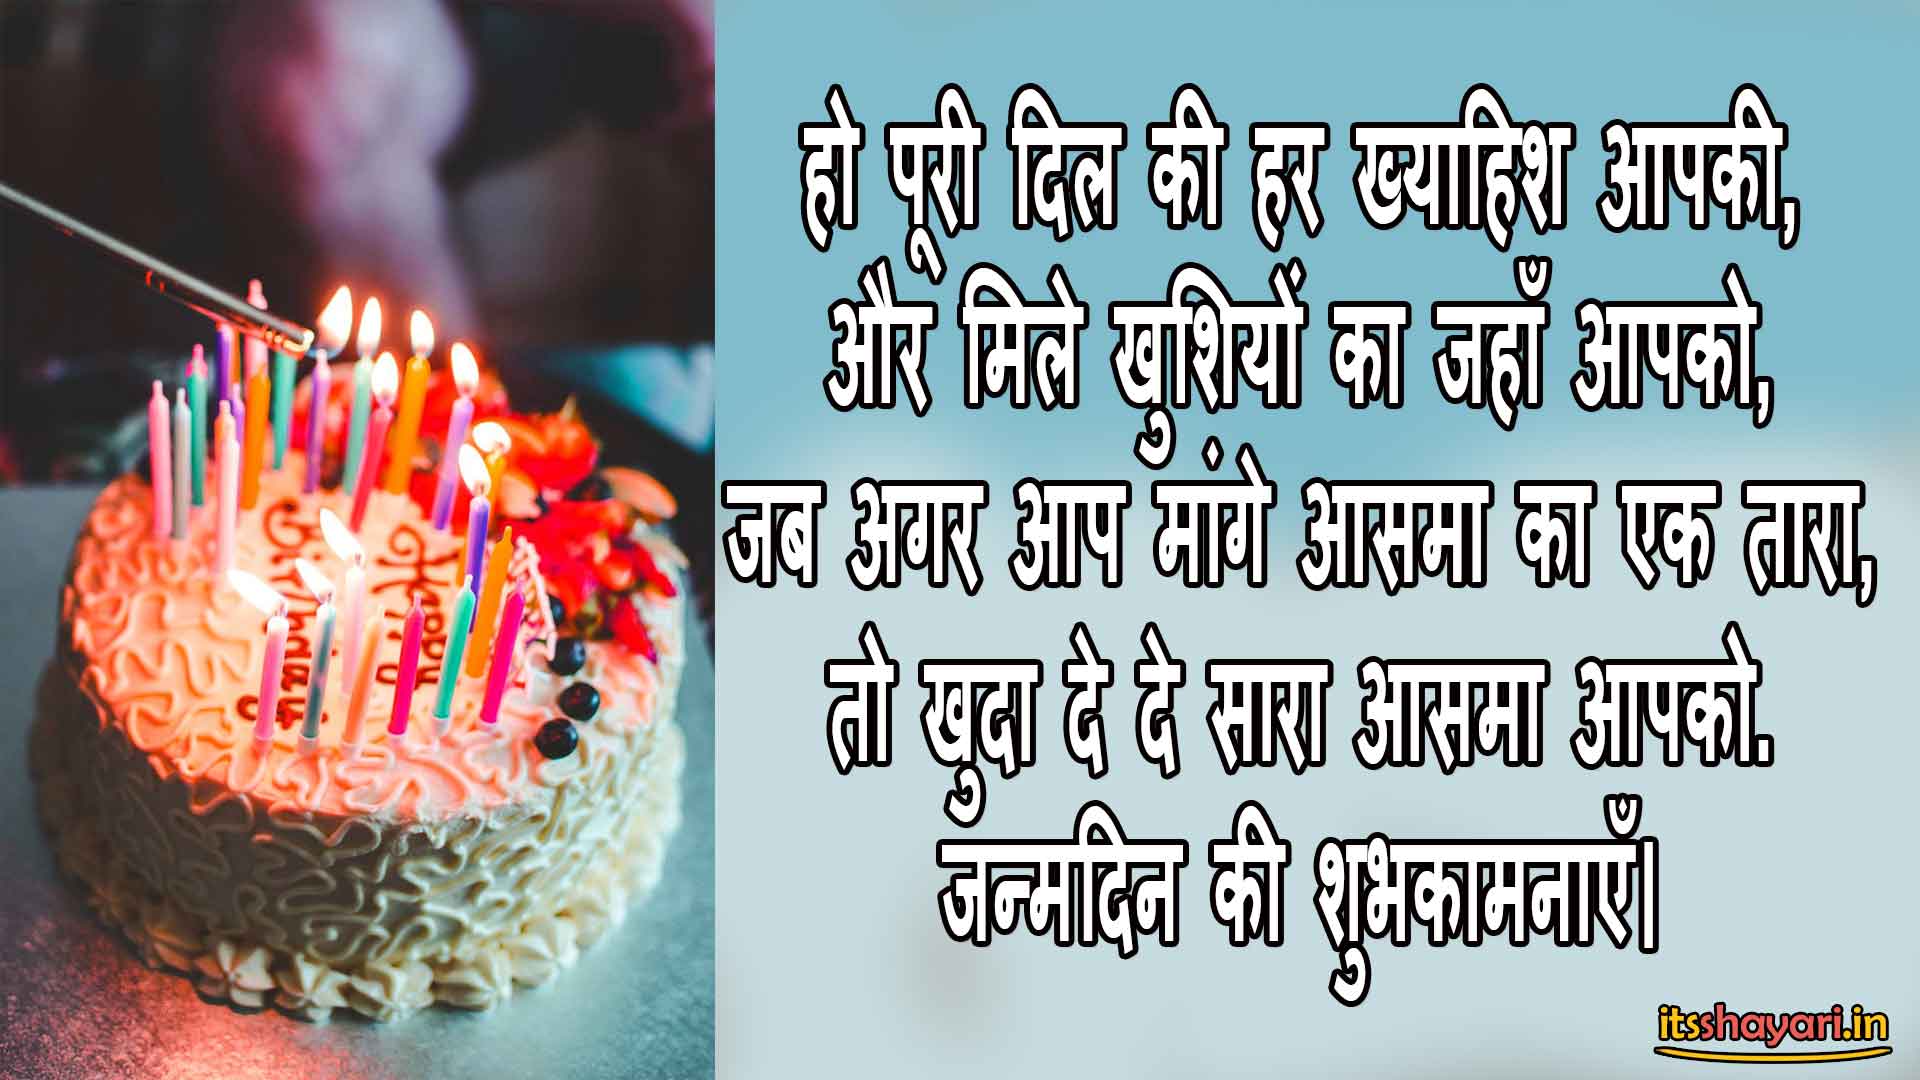 Birthday wishes hindi